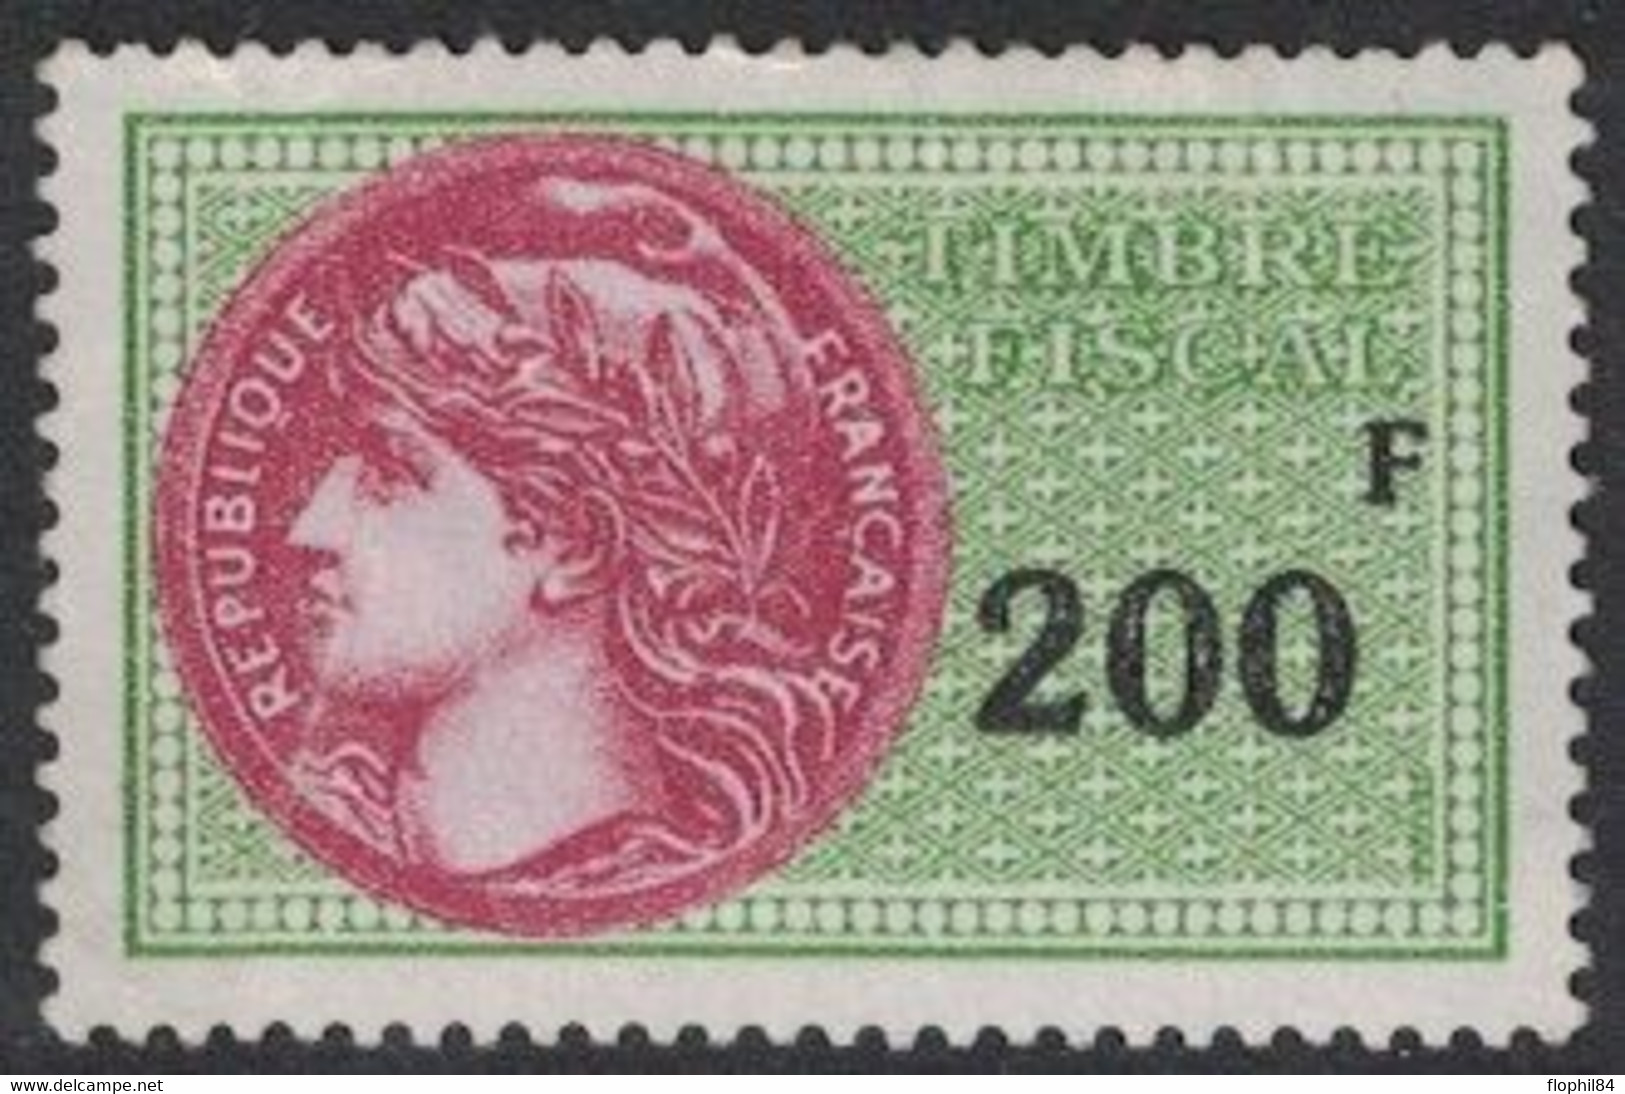 TIMBRE MOBILE - FISCAUX GENERAUX - N°500 - AVEC GOMME SANS TRACE - COTE 80€ . - Stamps